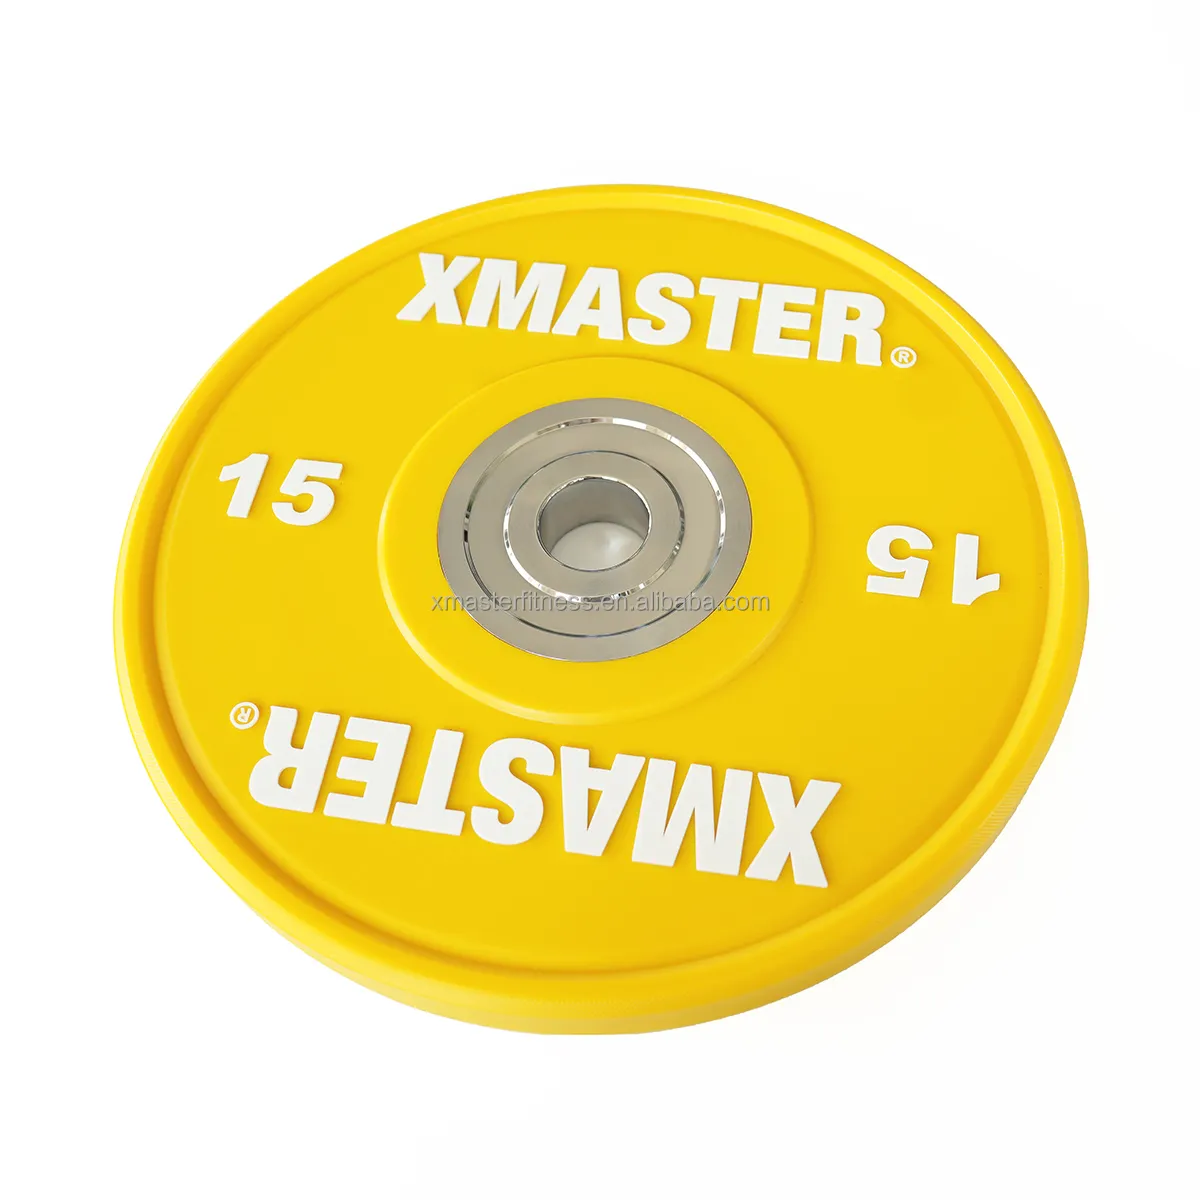 Xmaster-placas de peso lbs, placa de competición